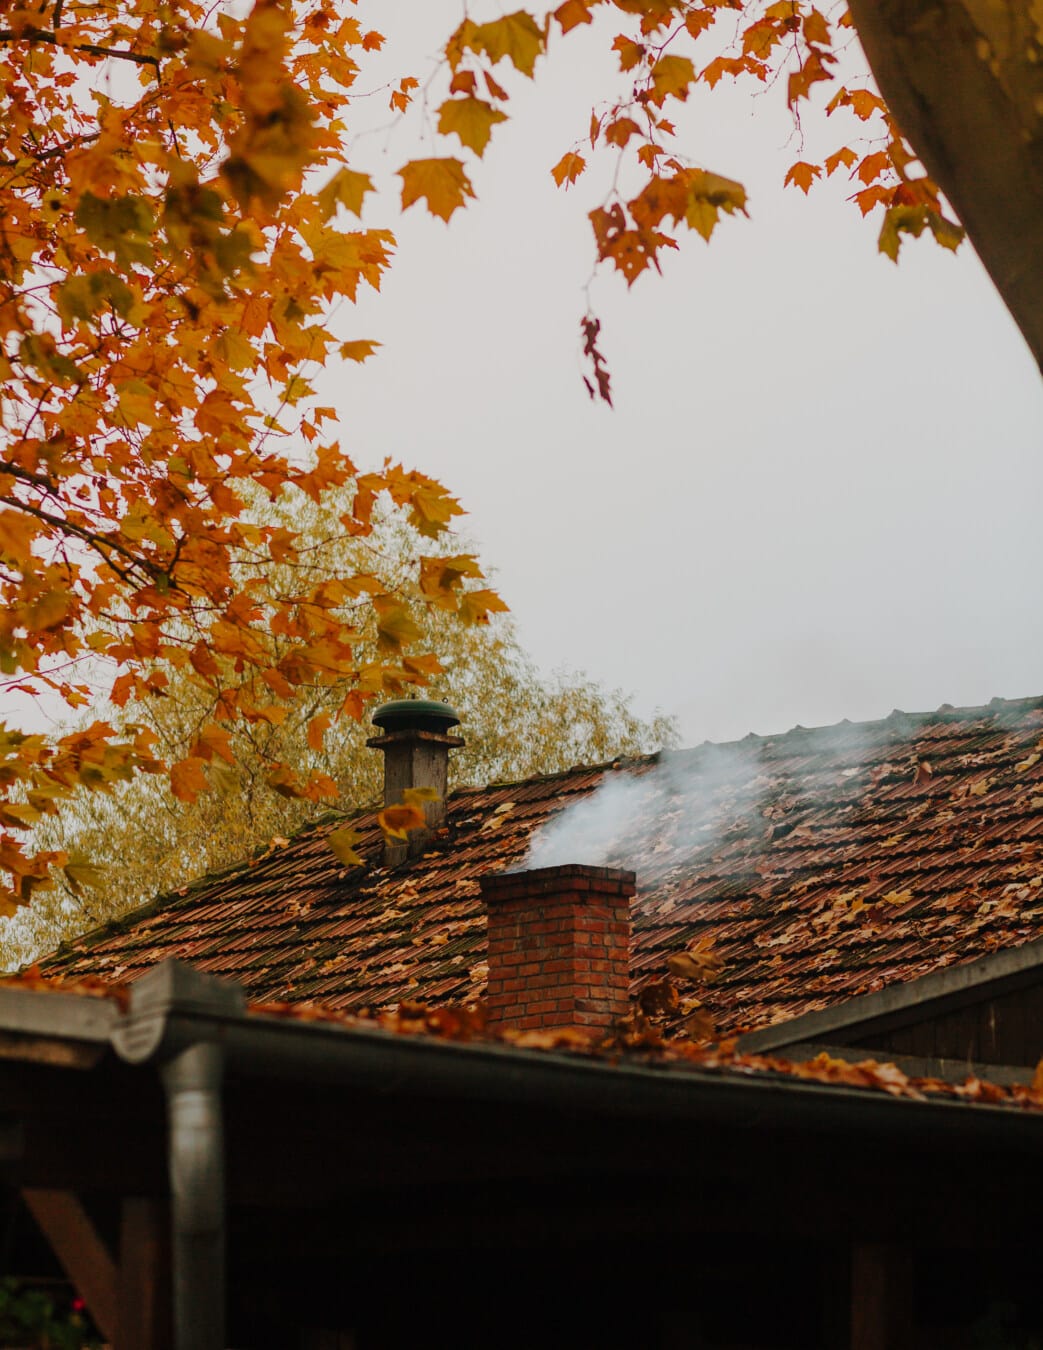 kouř, komín, podzimní sezóna, střešní, střecha, chlad, počasí, strom, dům, list